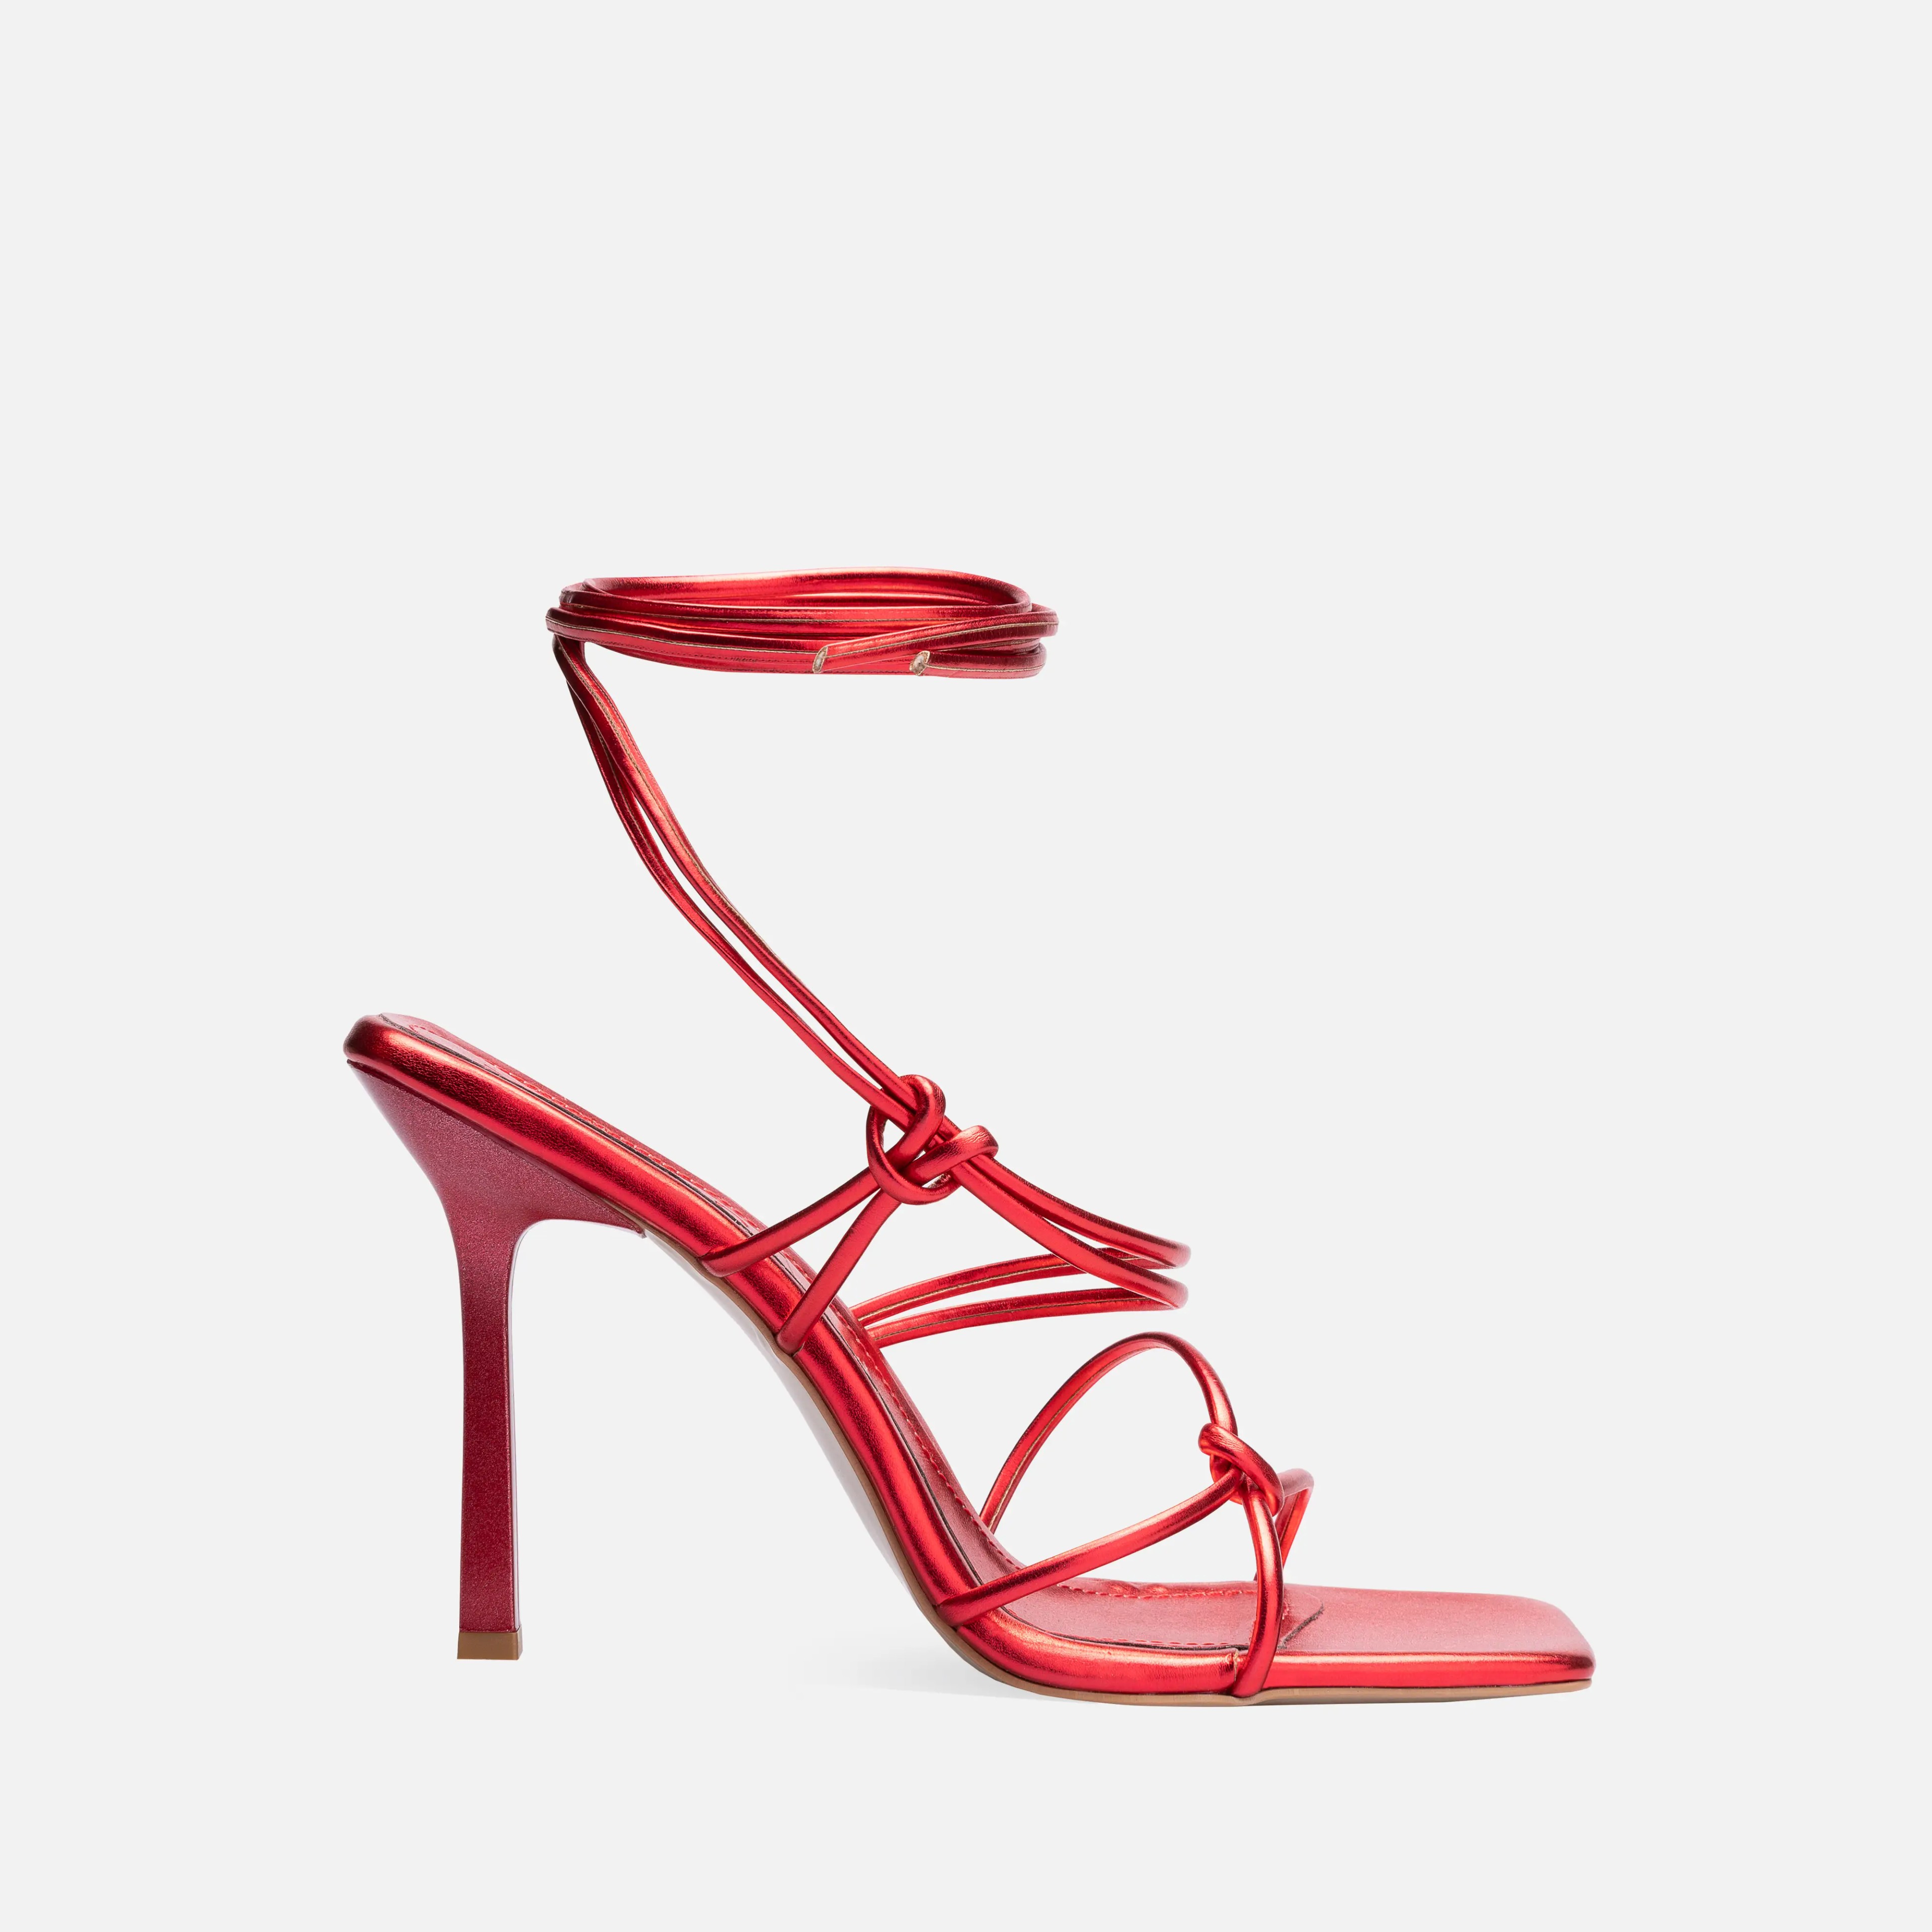 Metalik Bağcıklı İnce Yüksek Topuklu Ayakkabı - Kırmızı